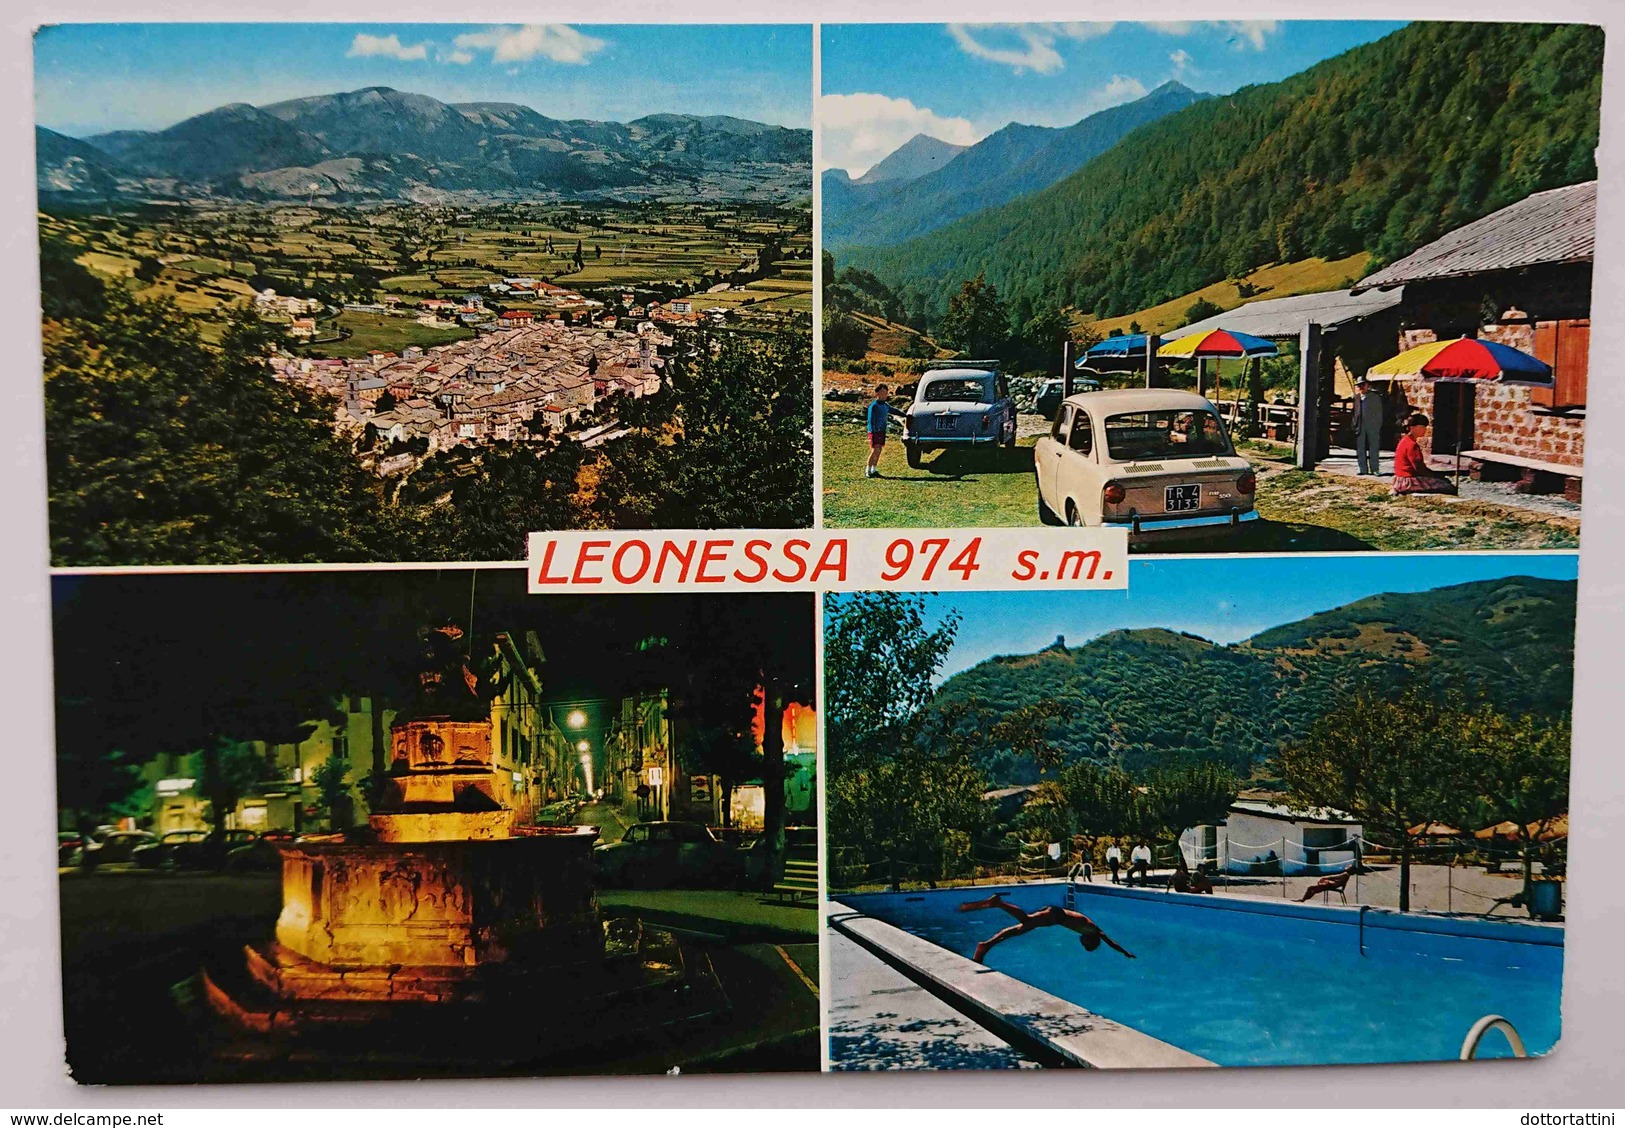 LEONESSA (RIETI) - Multiview - Auto Fiat 650 - Piscina, Fontana - Albergo Hotel La TORRE -  Vg L2 - Rieti